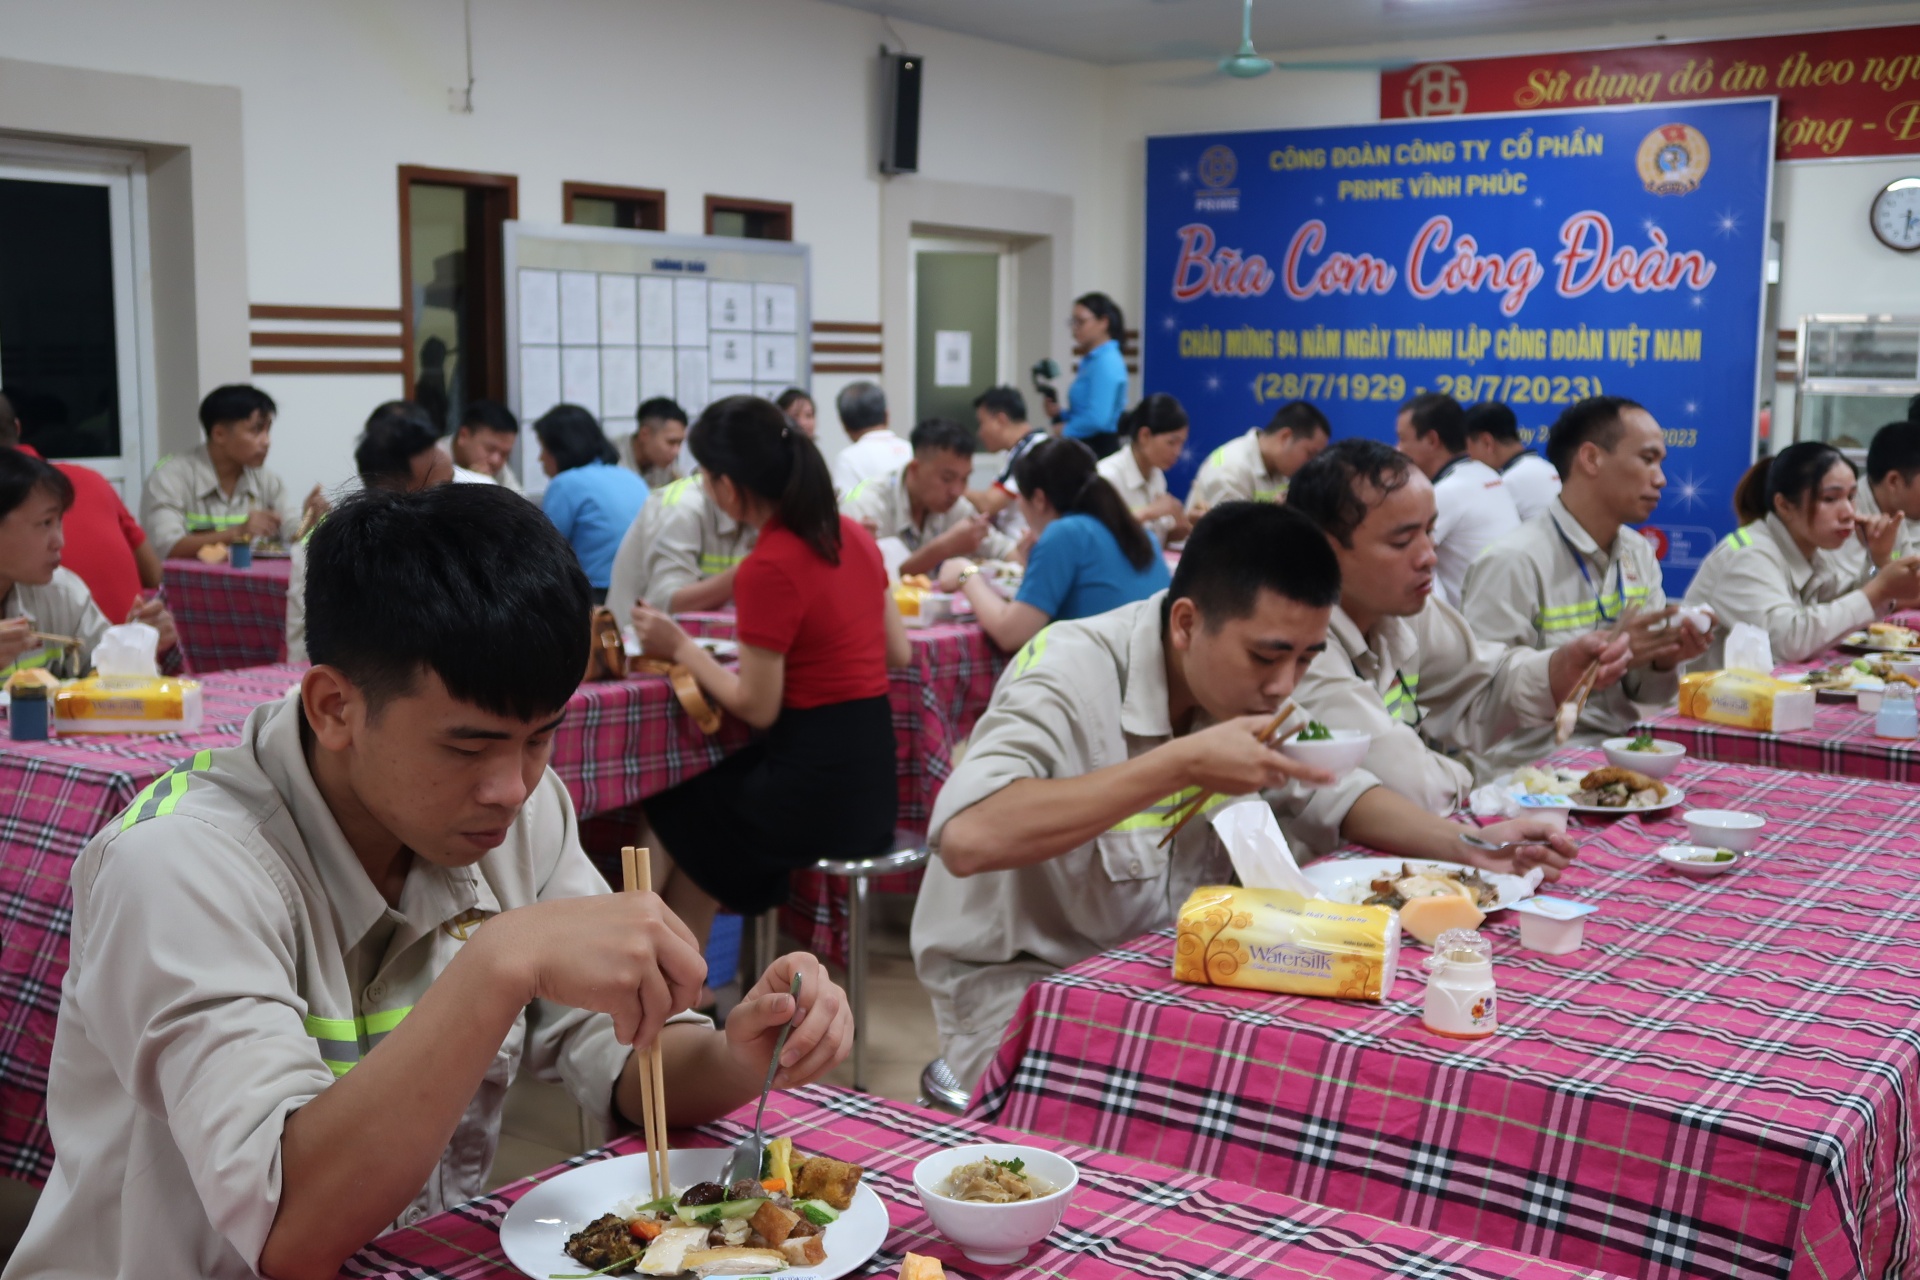 "Bữa cơm công đoàn" tại Công ty Cổ phần Prime Vĩnh Phúc: Tiệc buffe cho người lao động